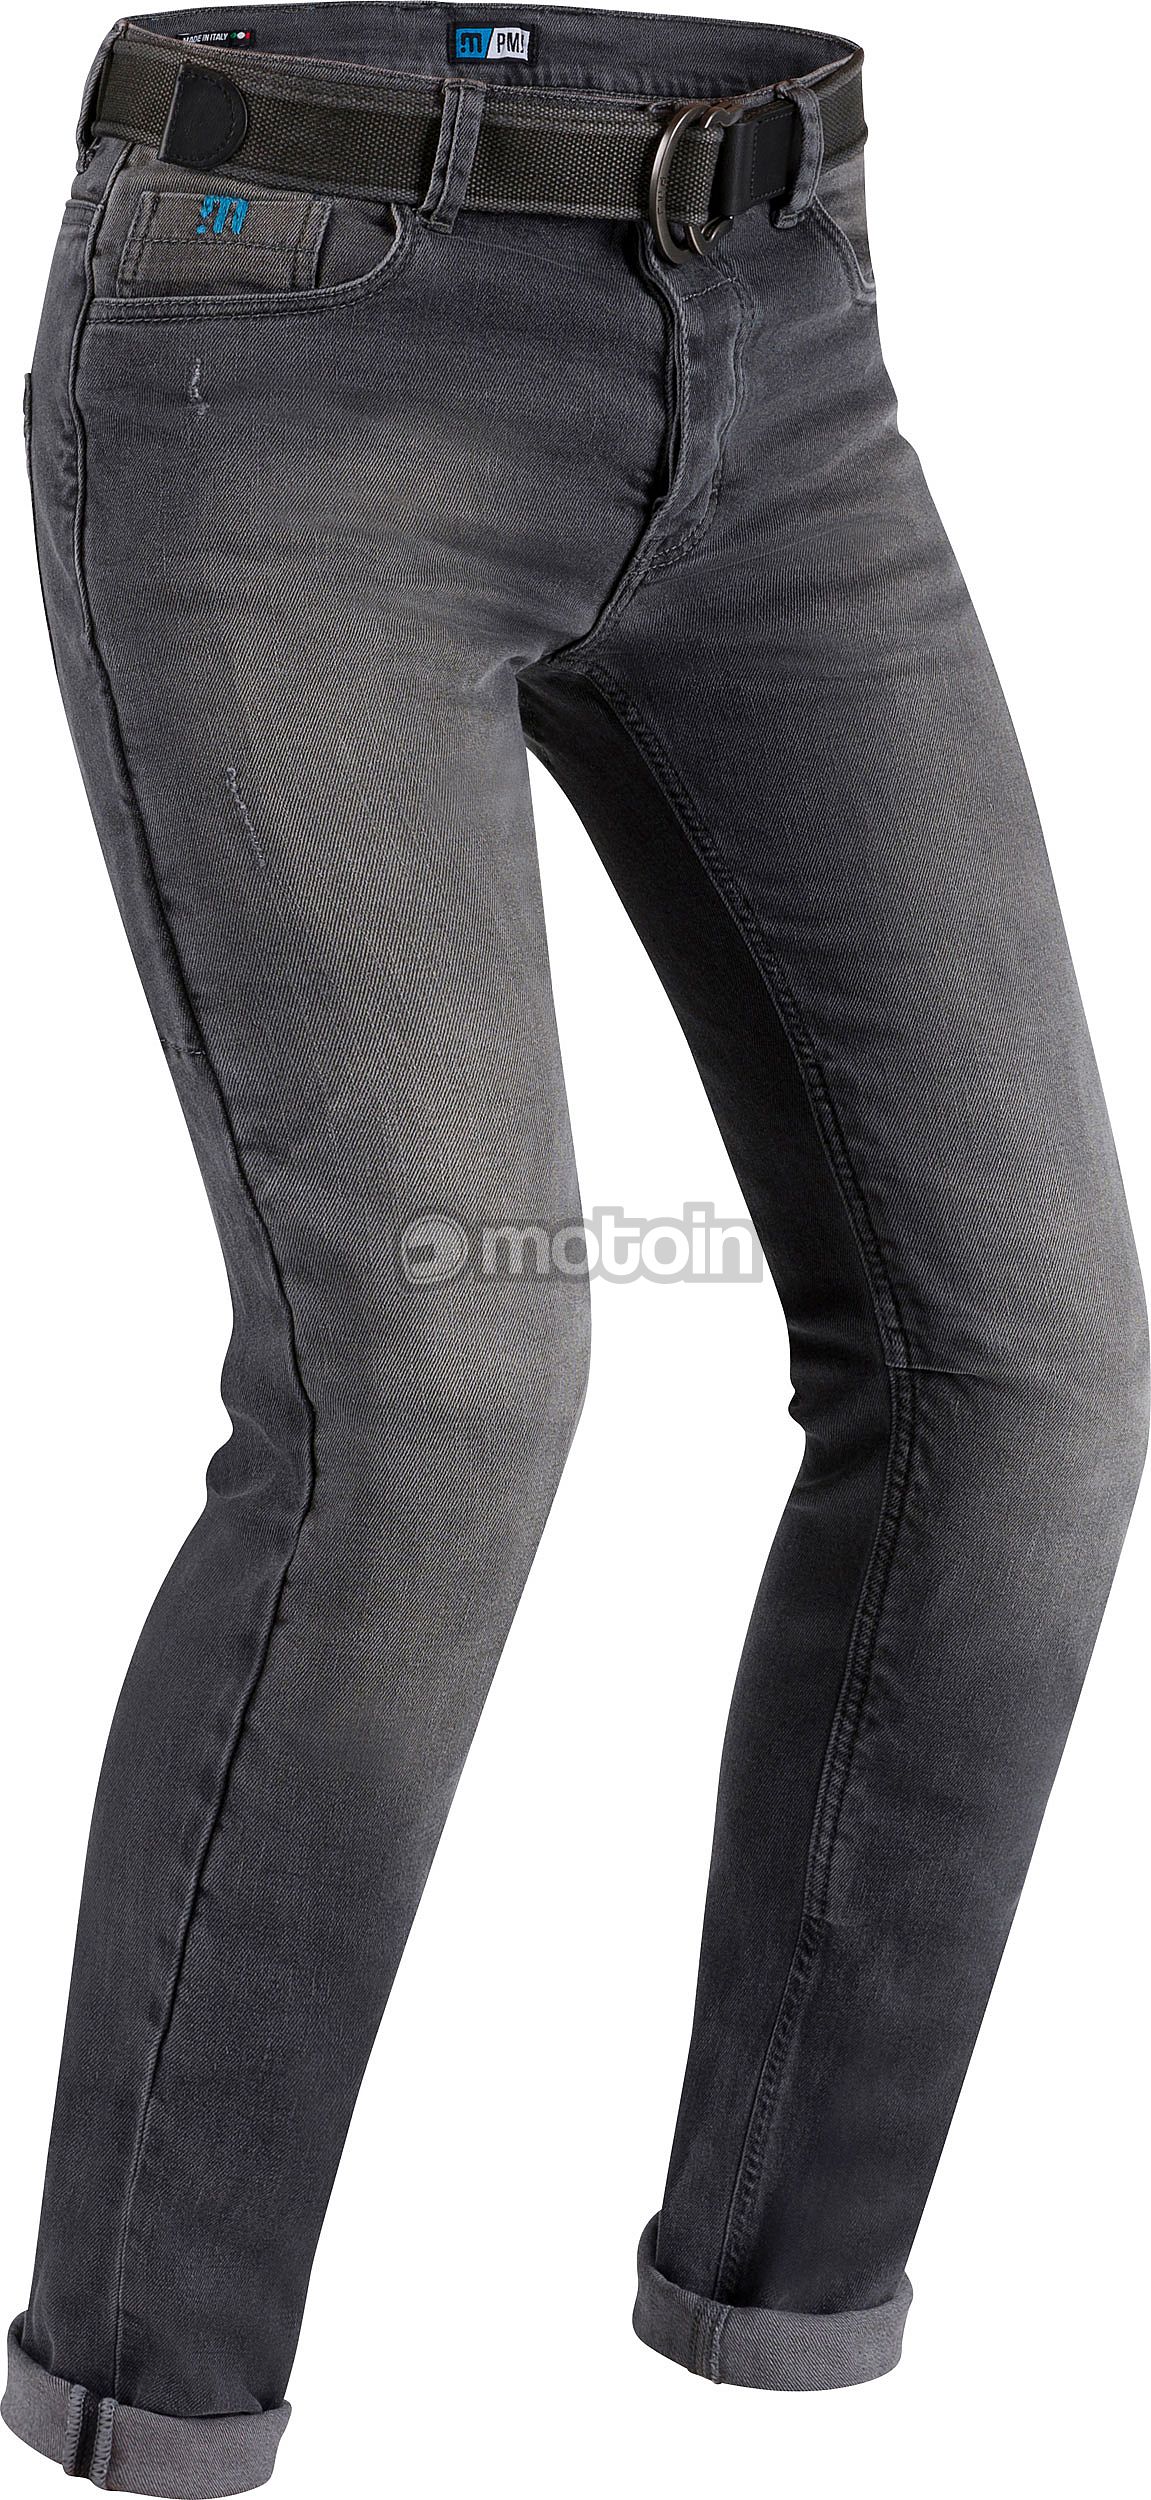 taglia 32 colore: grigio denim PMJ Legend Cafe Racer jeans 